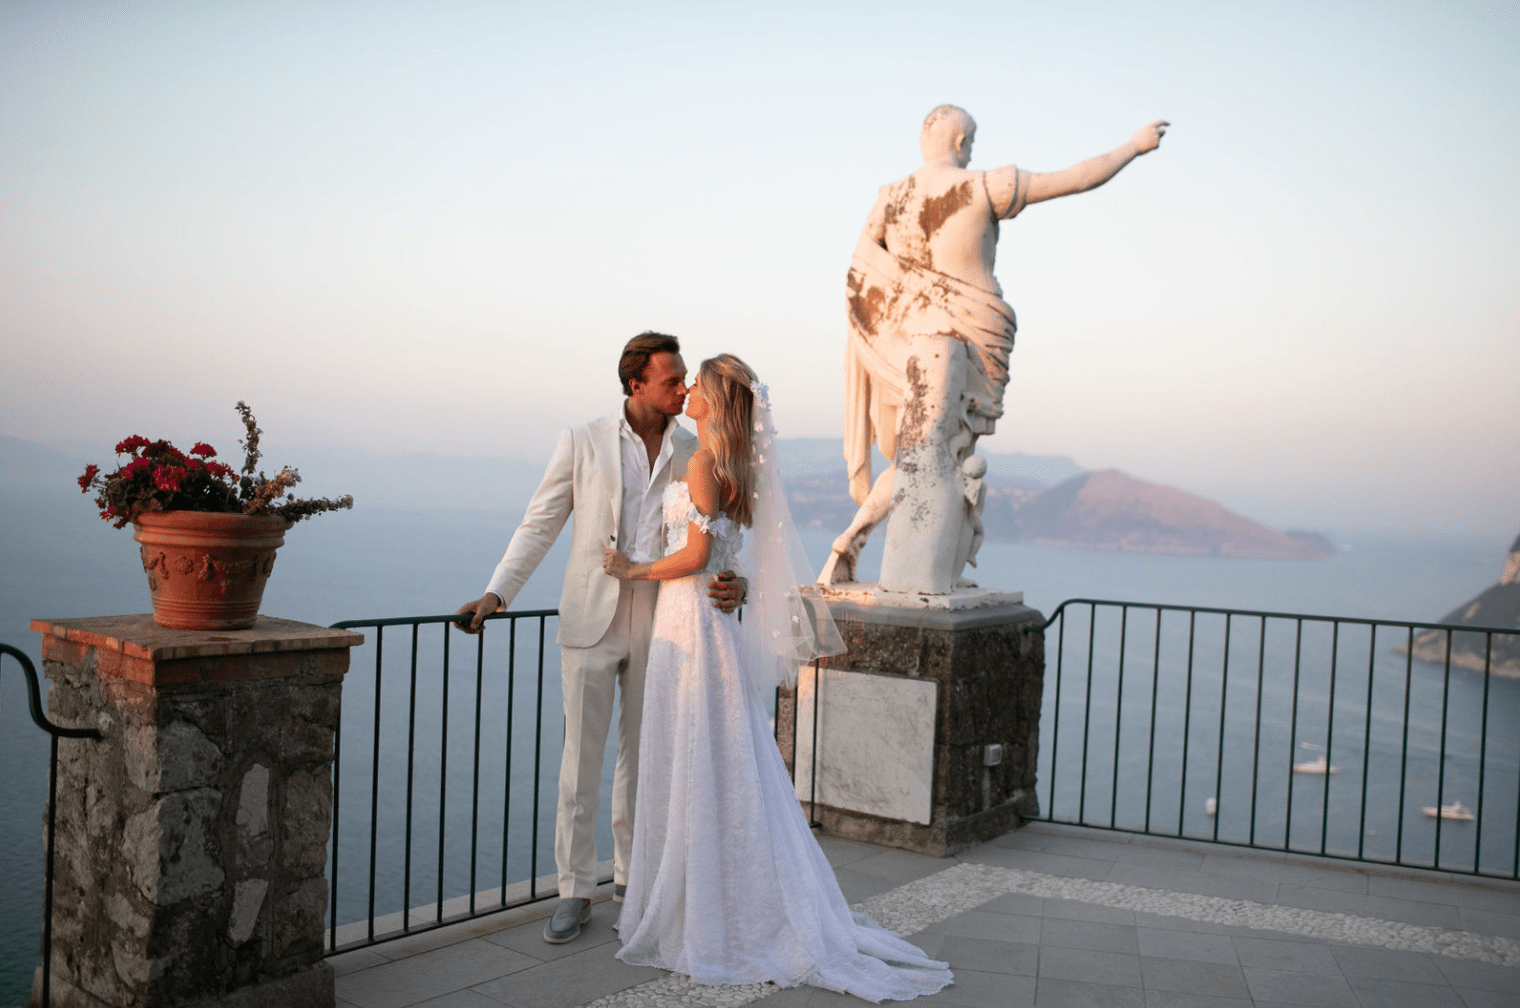 Габриэлла де Живанши (Gabriella de Givenchy) надела свадебное платье от кутюр своей семьи на скалах Капри